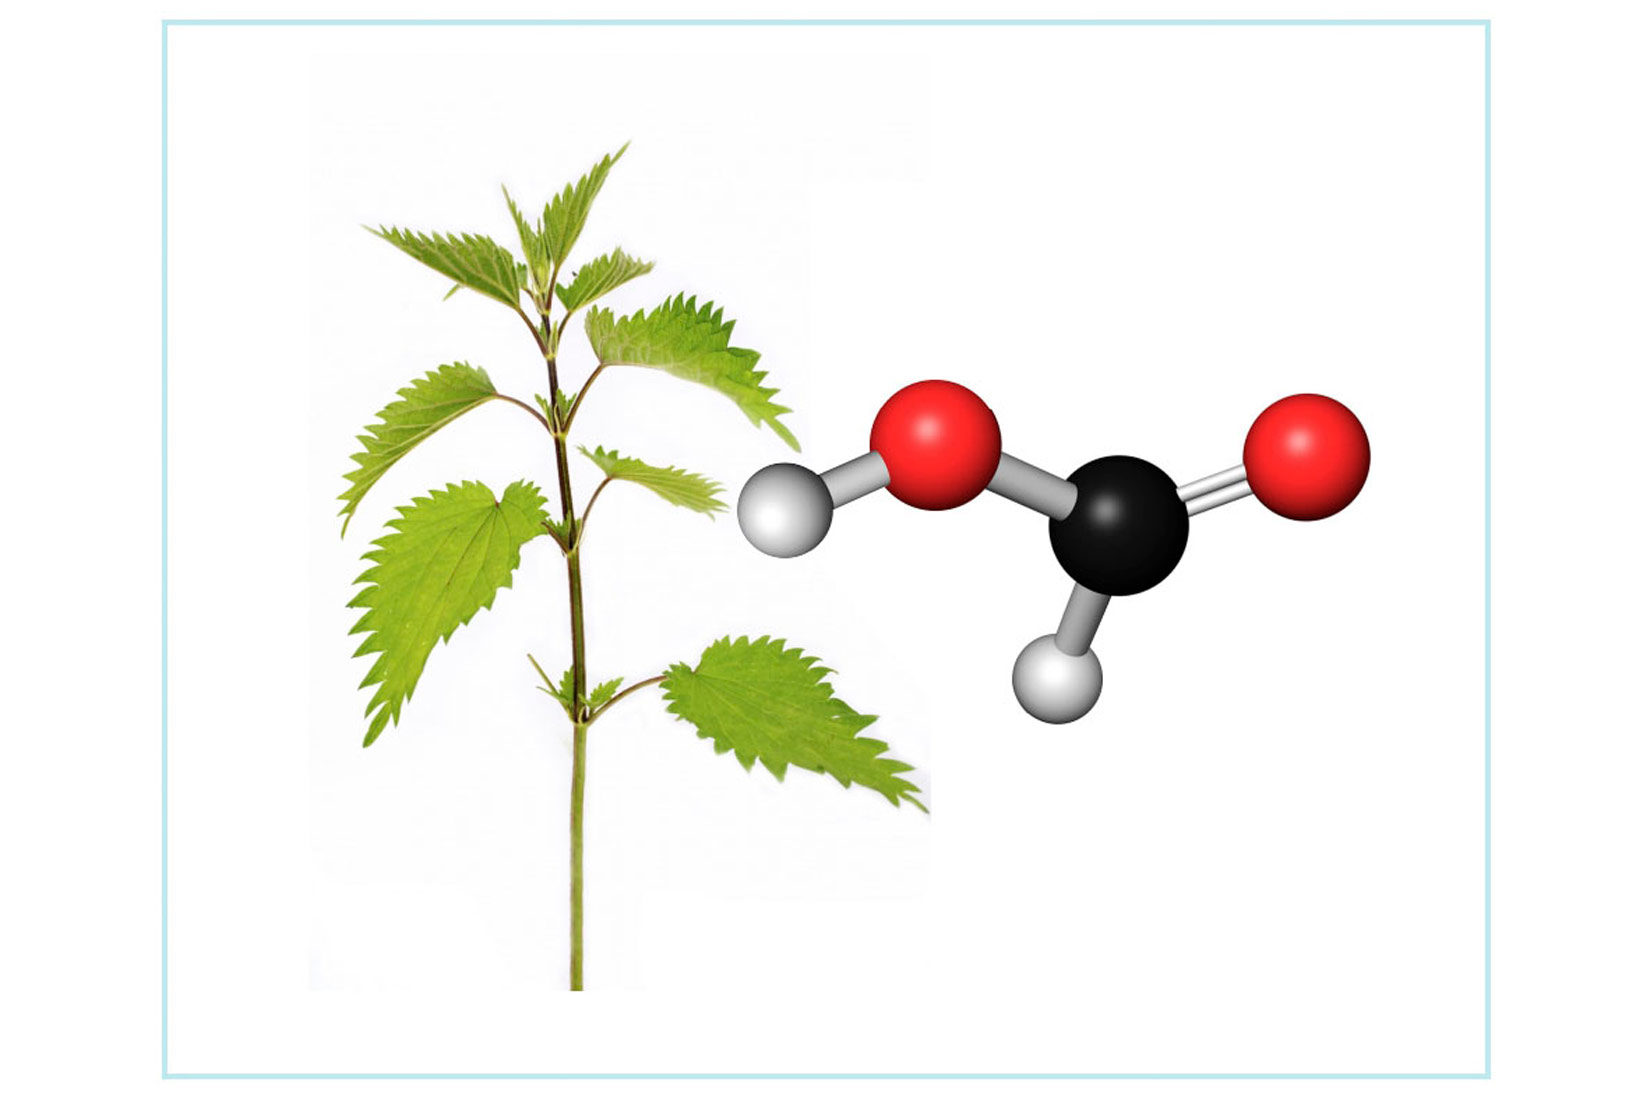 Fotografija prikazuje zelenu stabljiku koprive. Pored koprive je prikazana strukturna formula mravlje kiseline u koprivi.